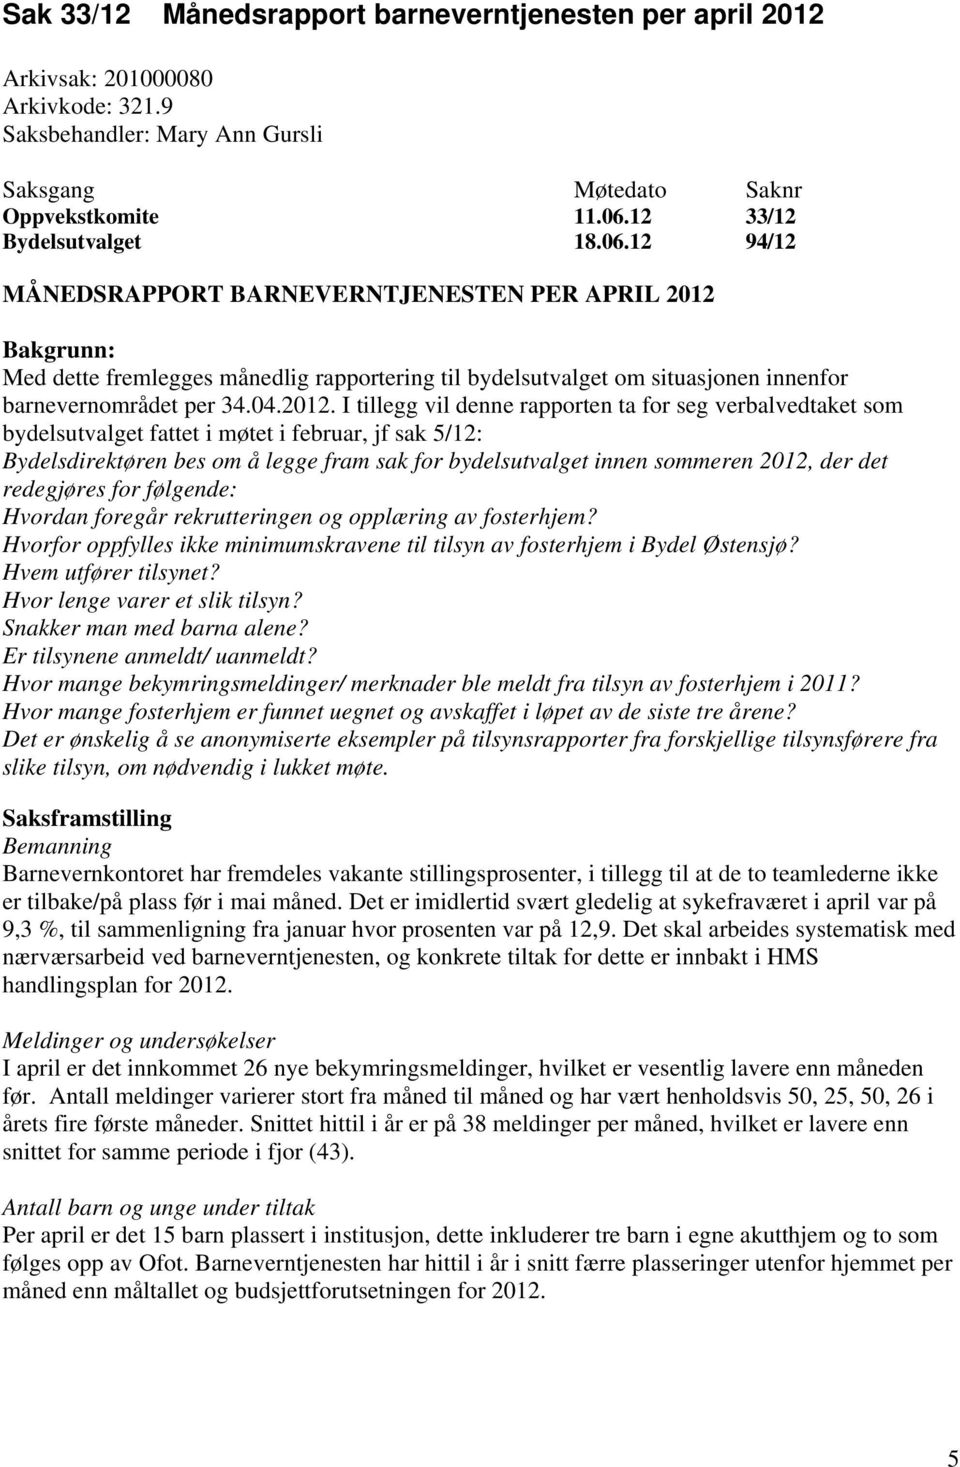 Bakgrunn: Med dette fremlegges månedlig rapportering til bydelsutvalget om situasjonen innenfor barnevernområdet per 34.04.2012.